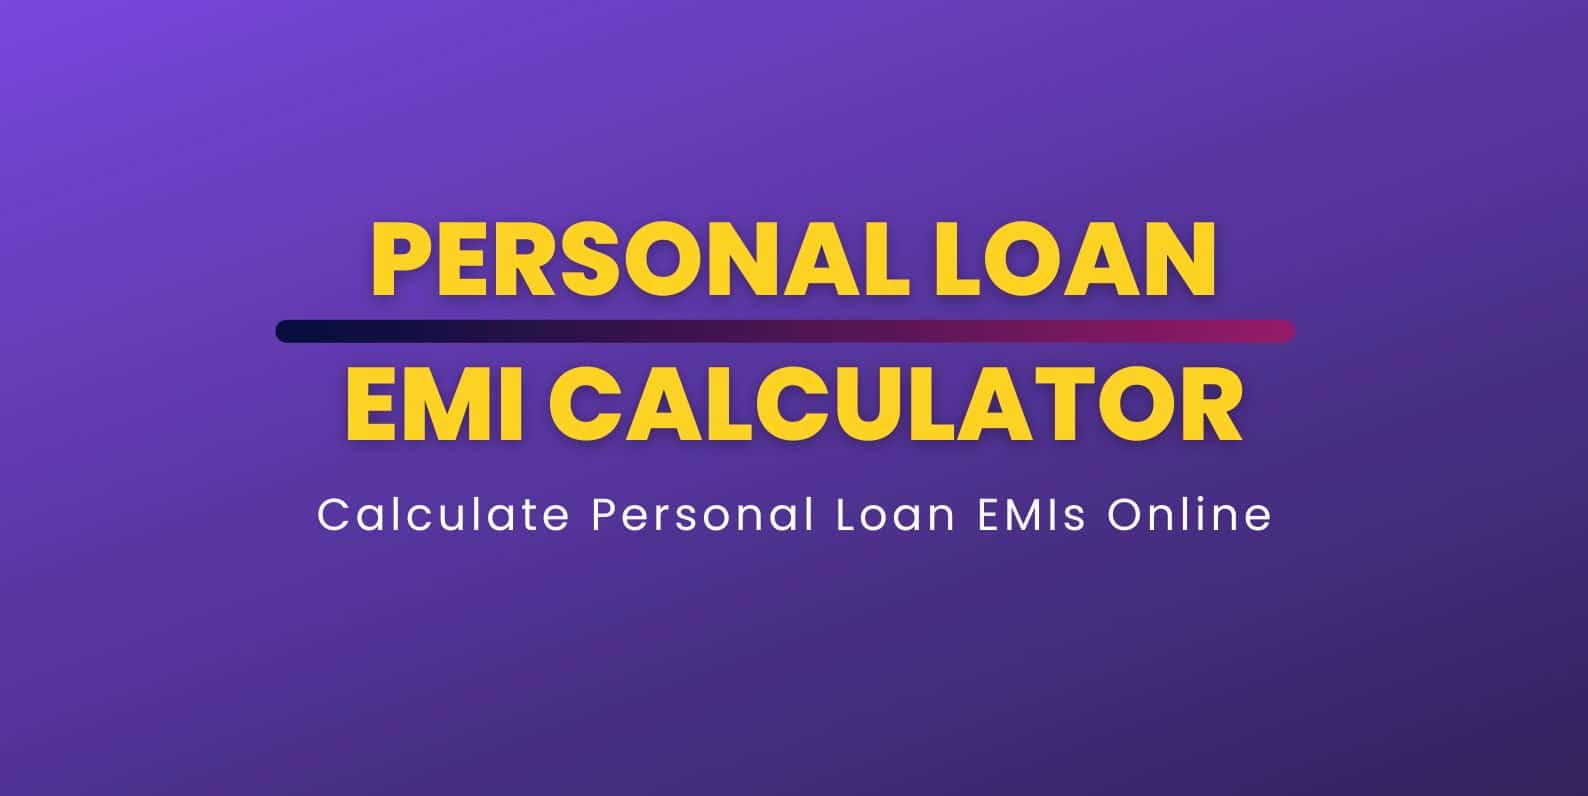 Personal Loan EMI Calculator to calculate Loan EMIs online